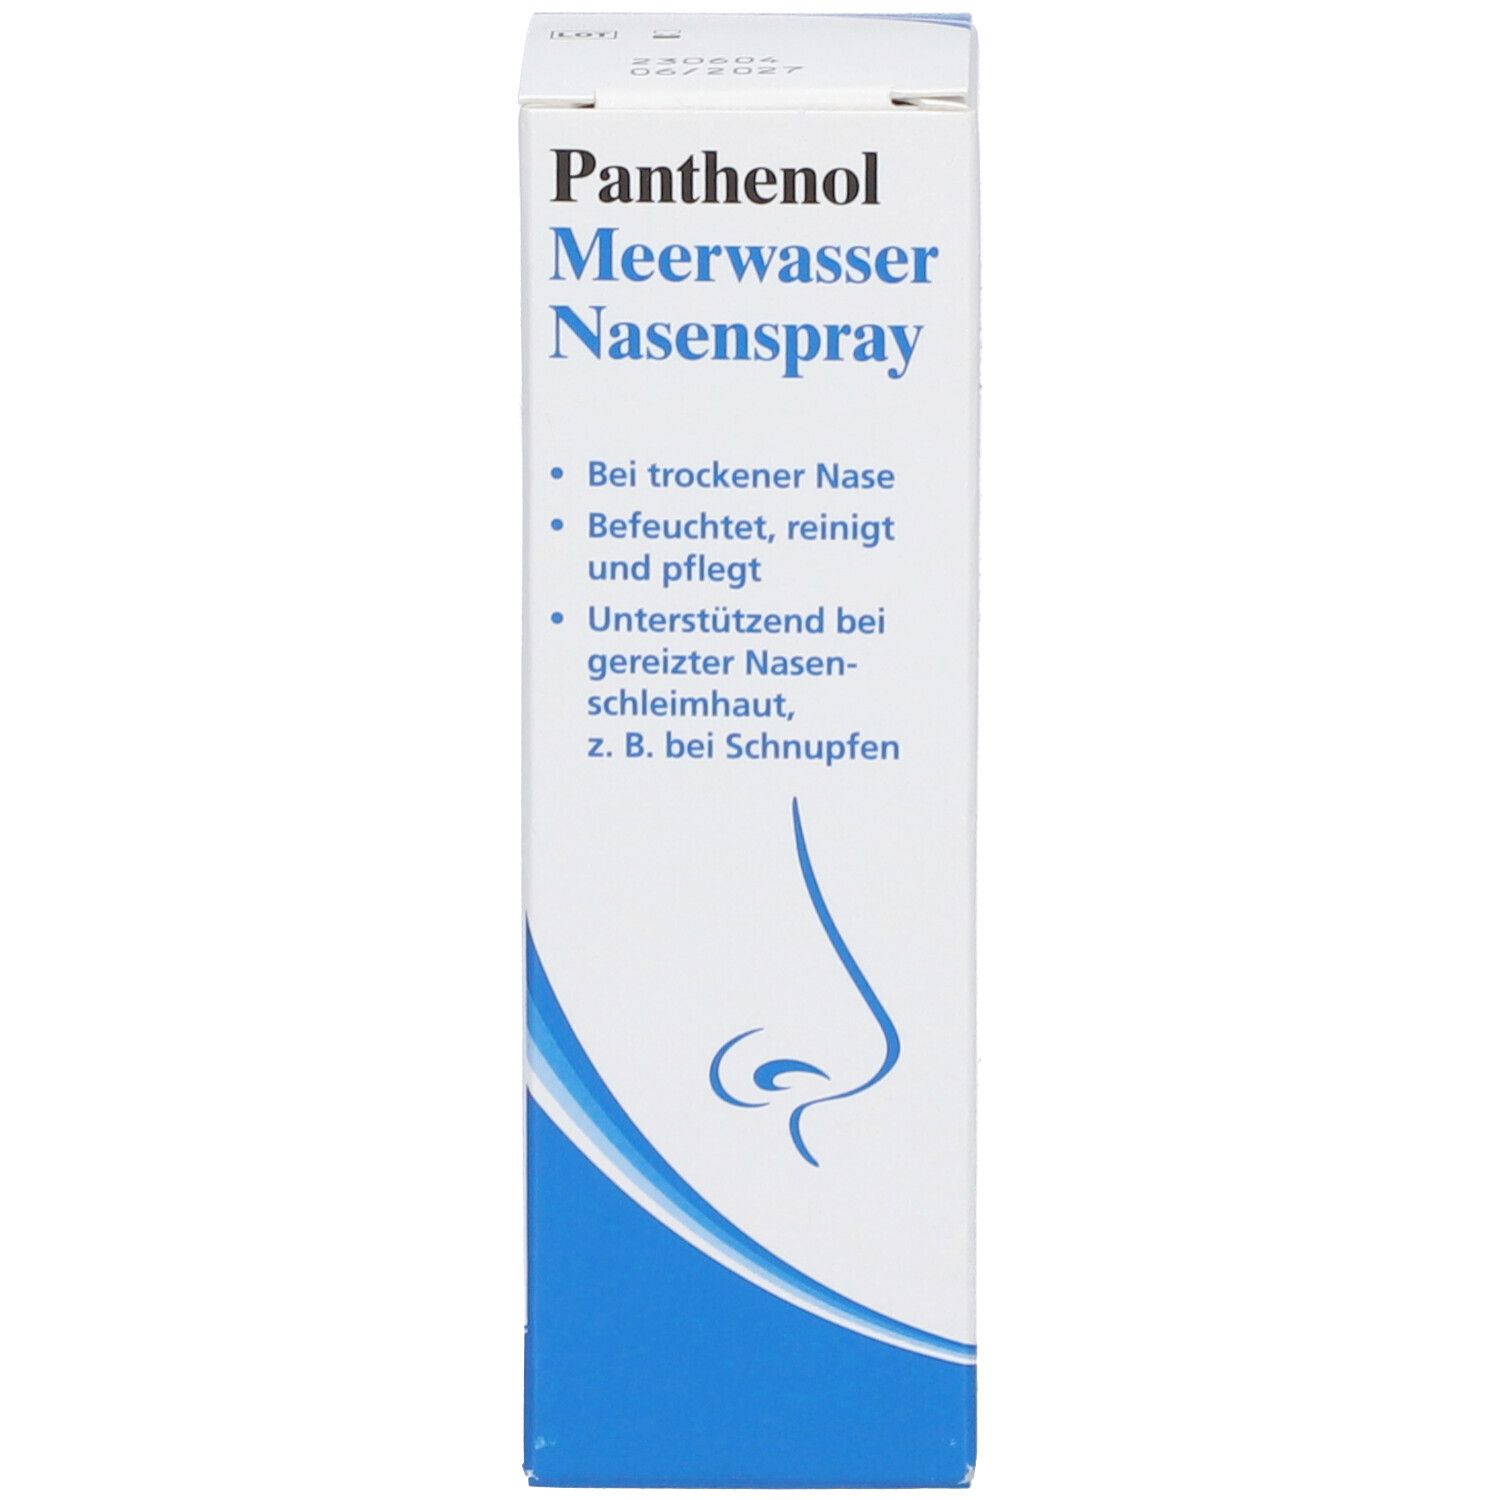 Panthenol Meerwasser Nasenspray